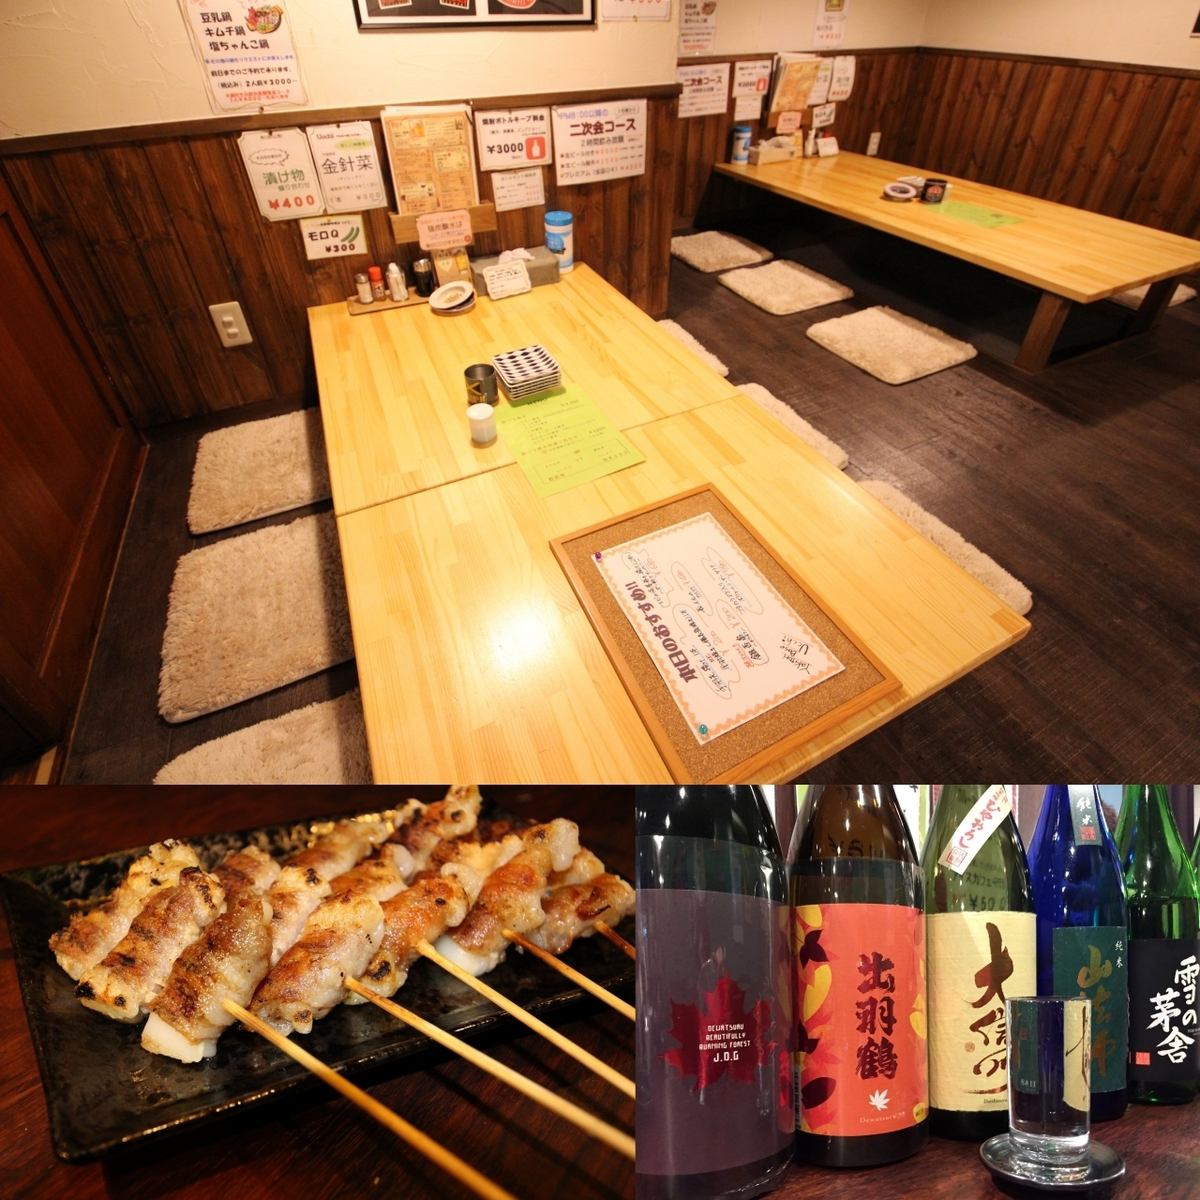 品尝北海道的木炭烤鸡肉，蔬菜和时令食材，并品尝各种酒精饮料。